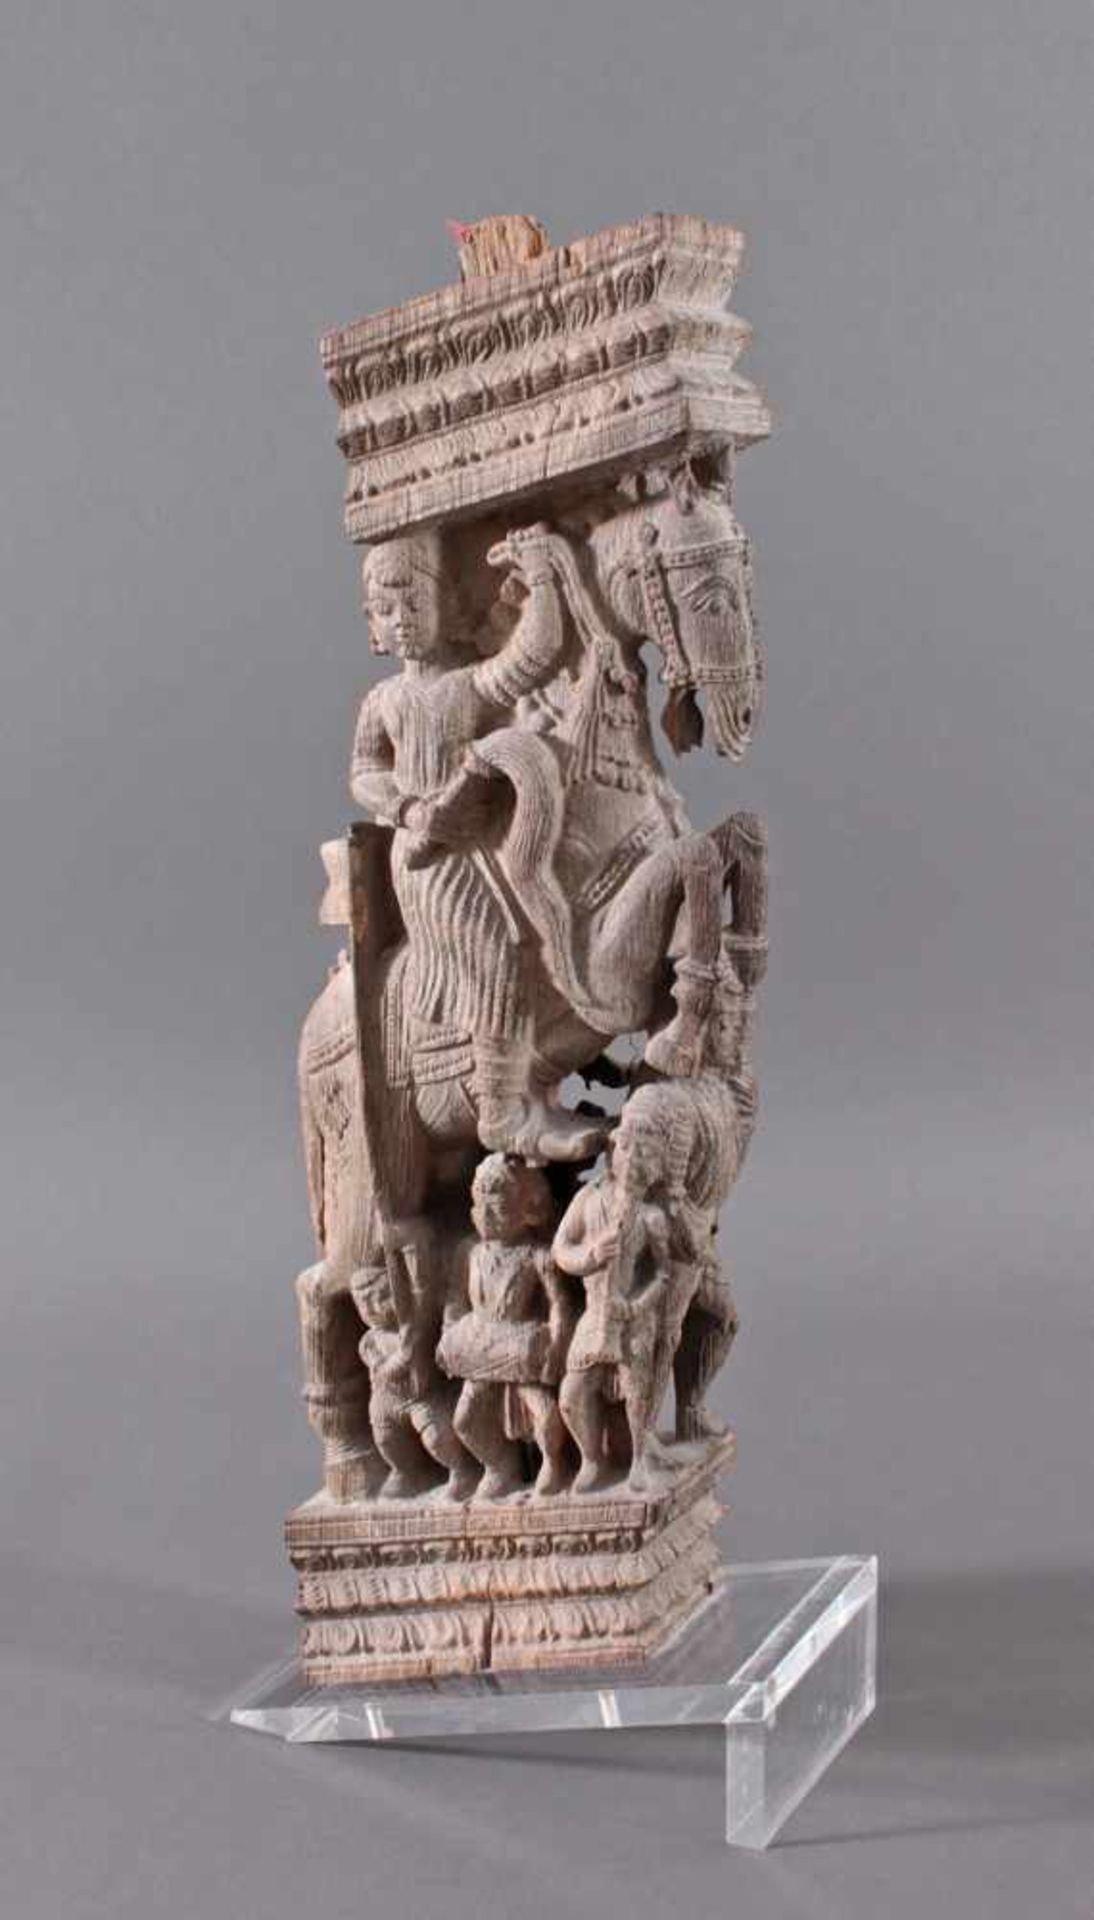 Holzplastik eines Reiters auf einem Pferd, Indien wohl Orissa 15./16. Jh.